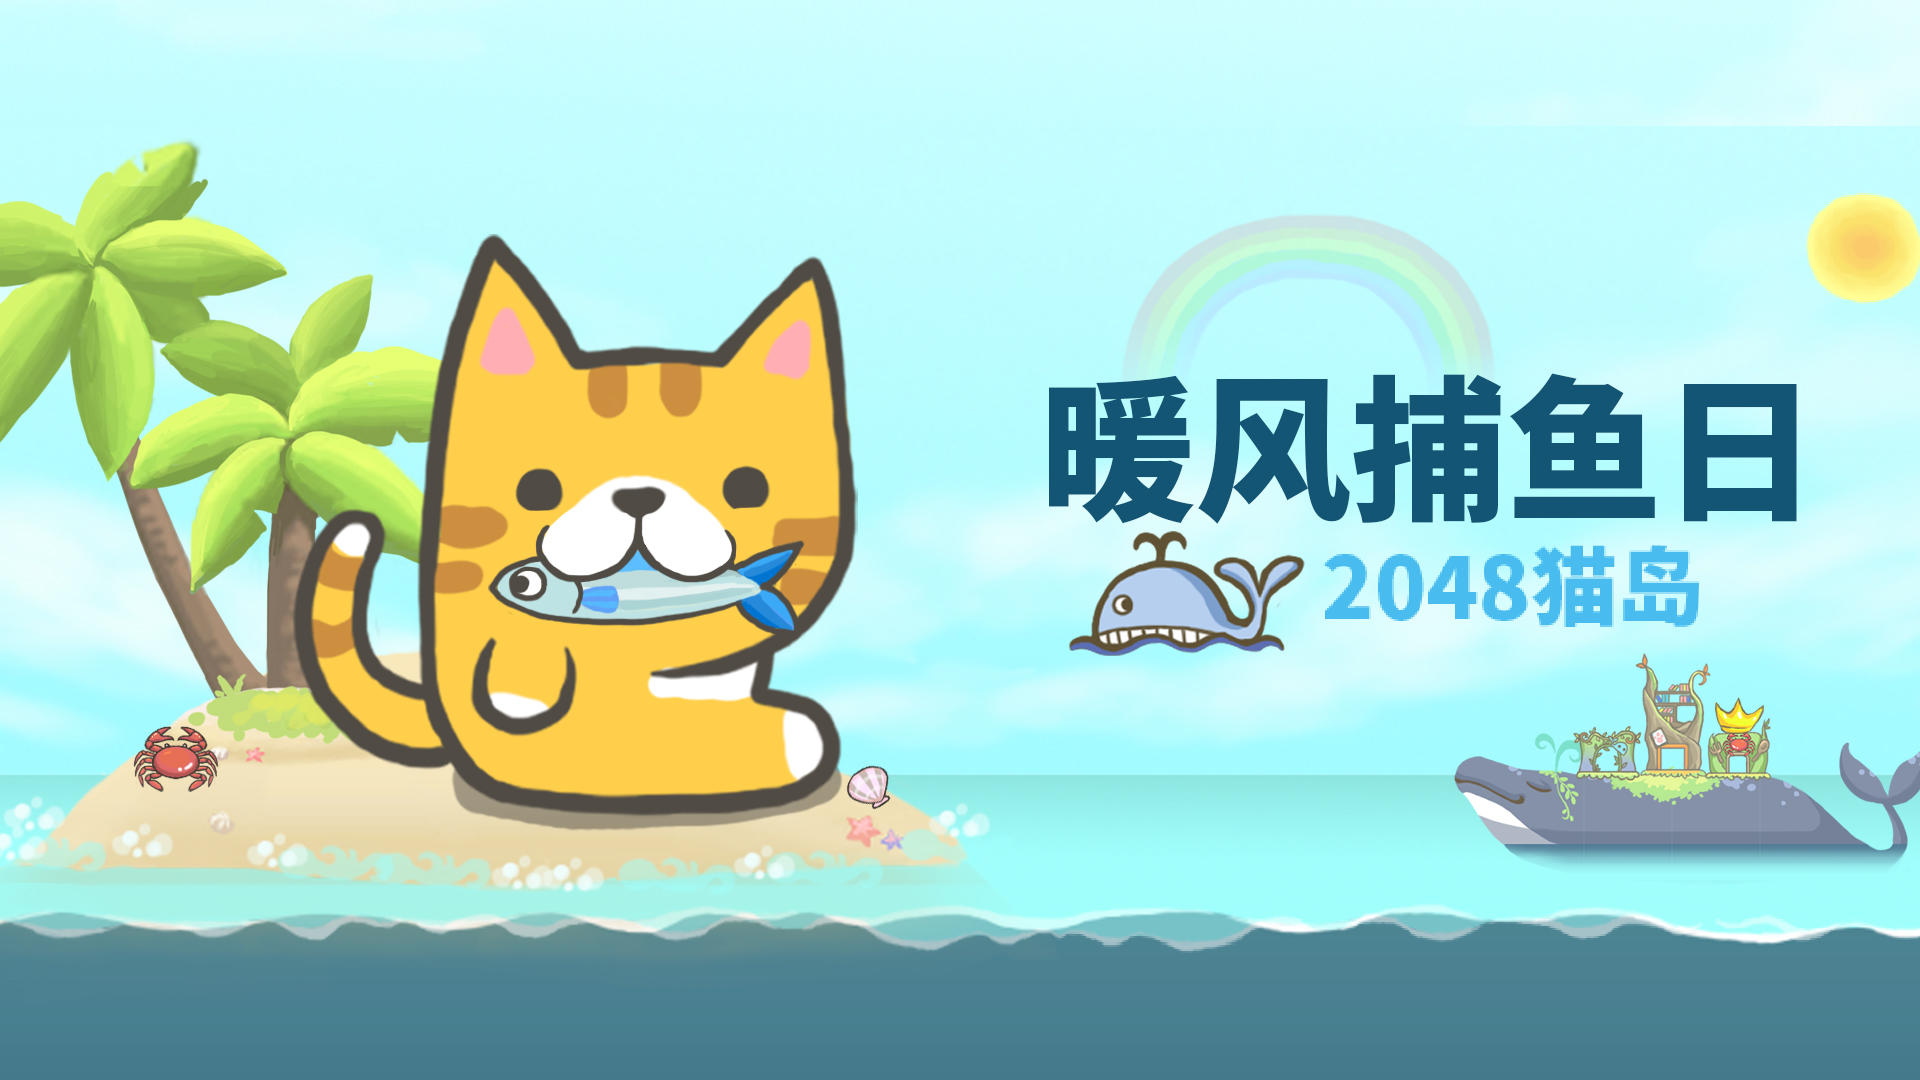 Banner of วันตกปลาลมอุ่น: 2048 เกาะแมว 